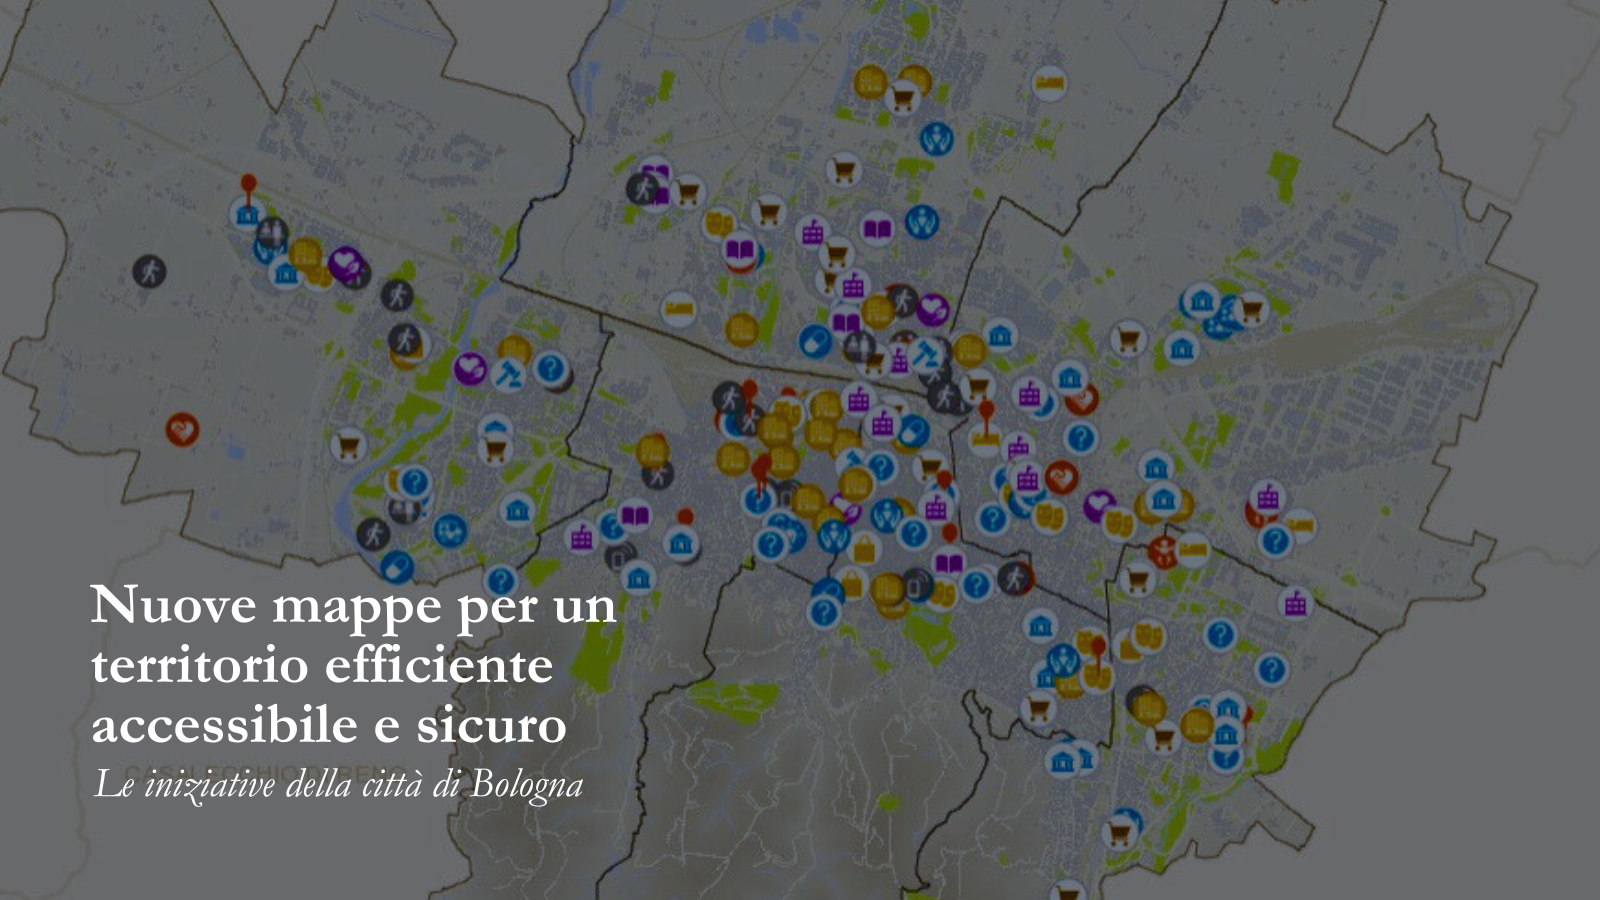 Nuove mappe per un territorio efficiente, accessibile e sicuro: le iniziative della città di Bologna